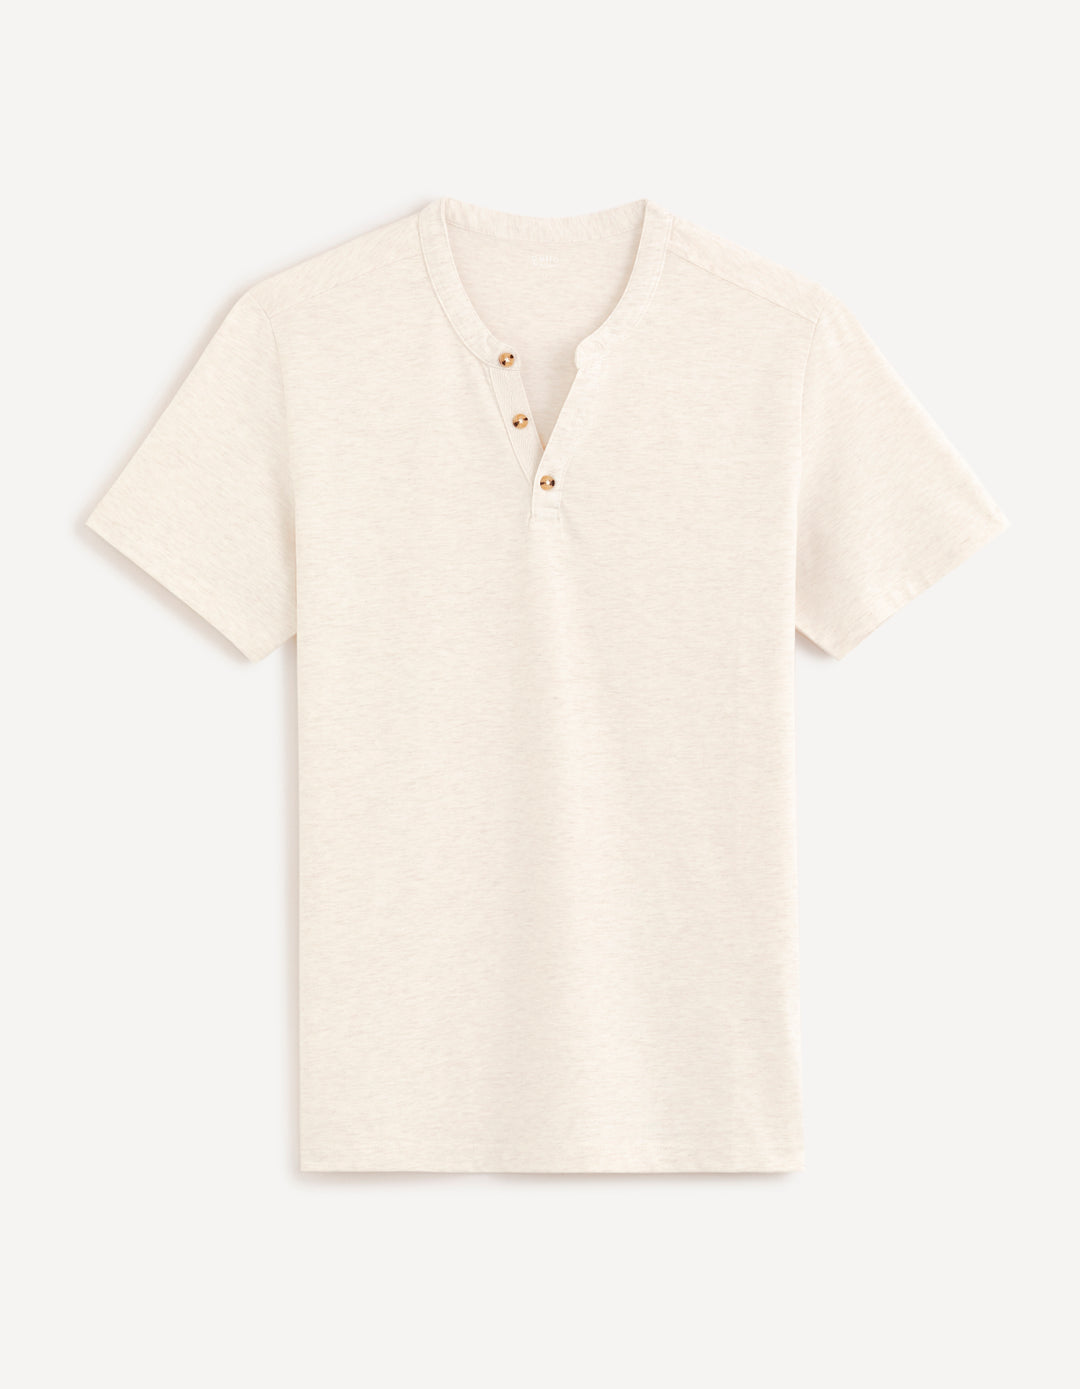 Men - Knitted - T-Shirt - Short sleeves - Henley collar